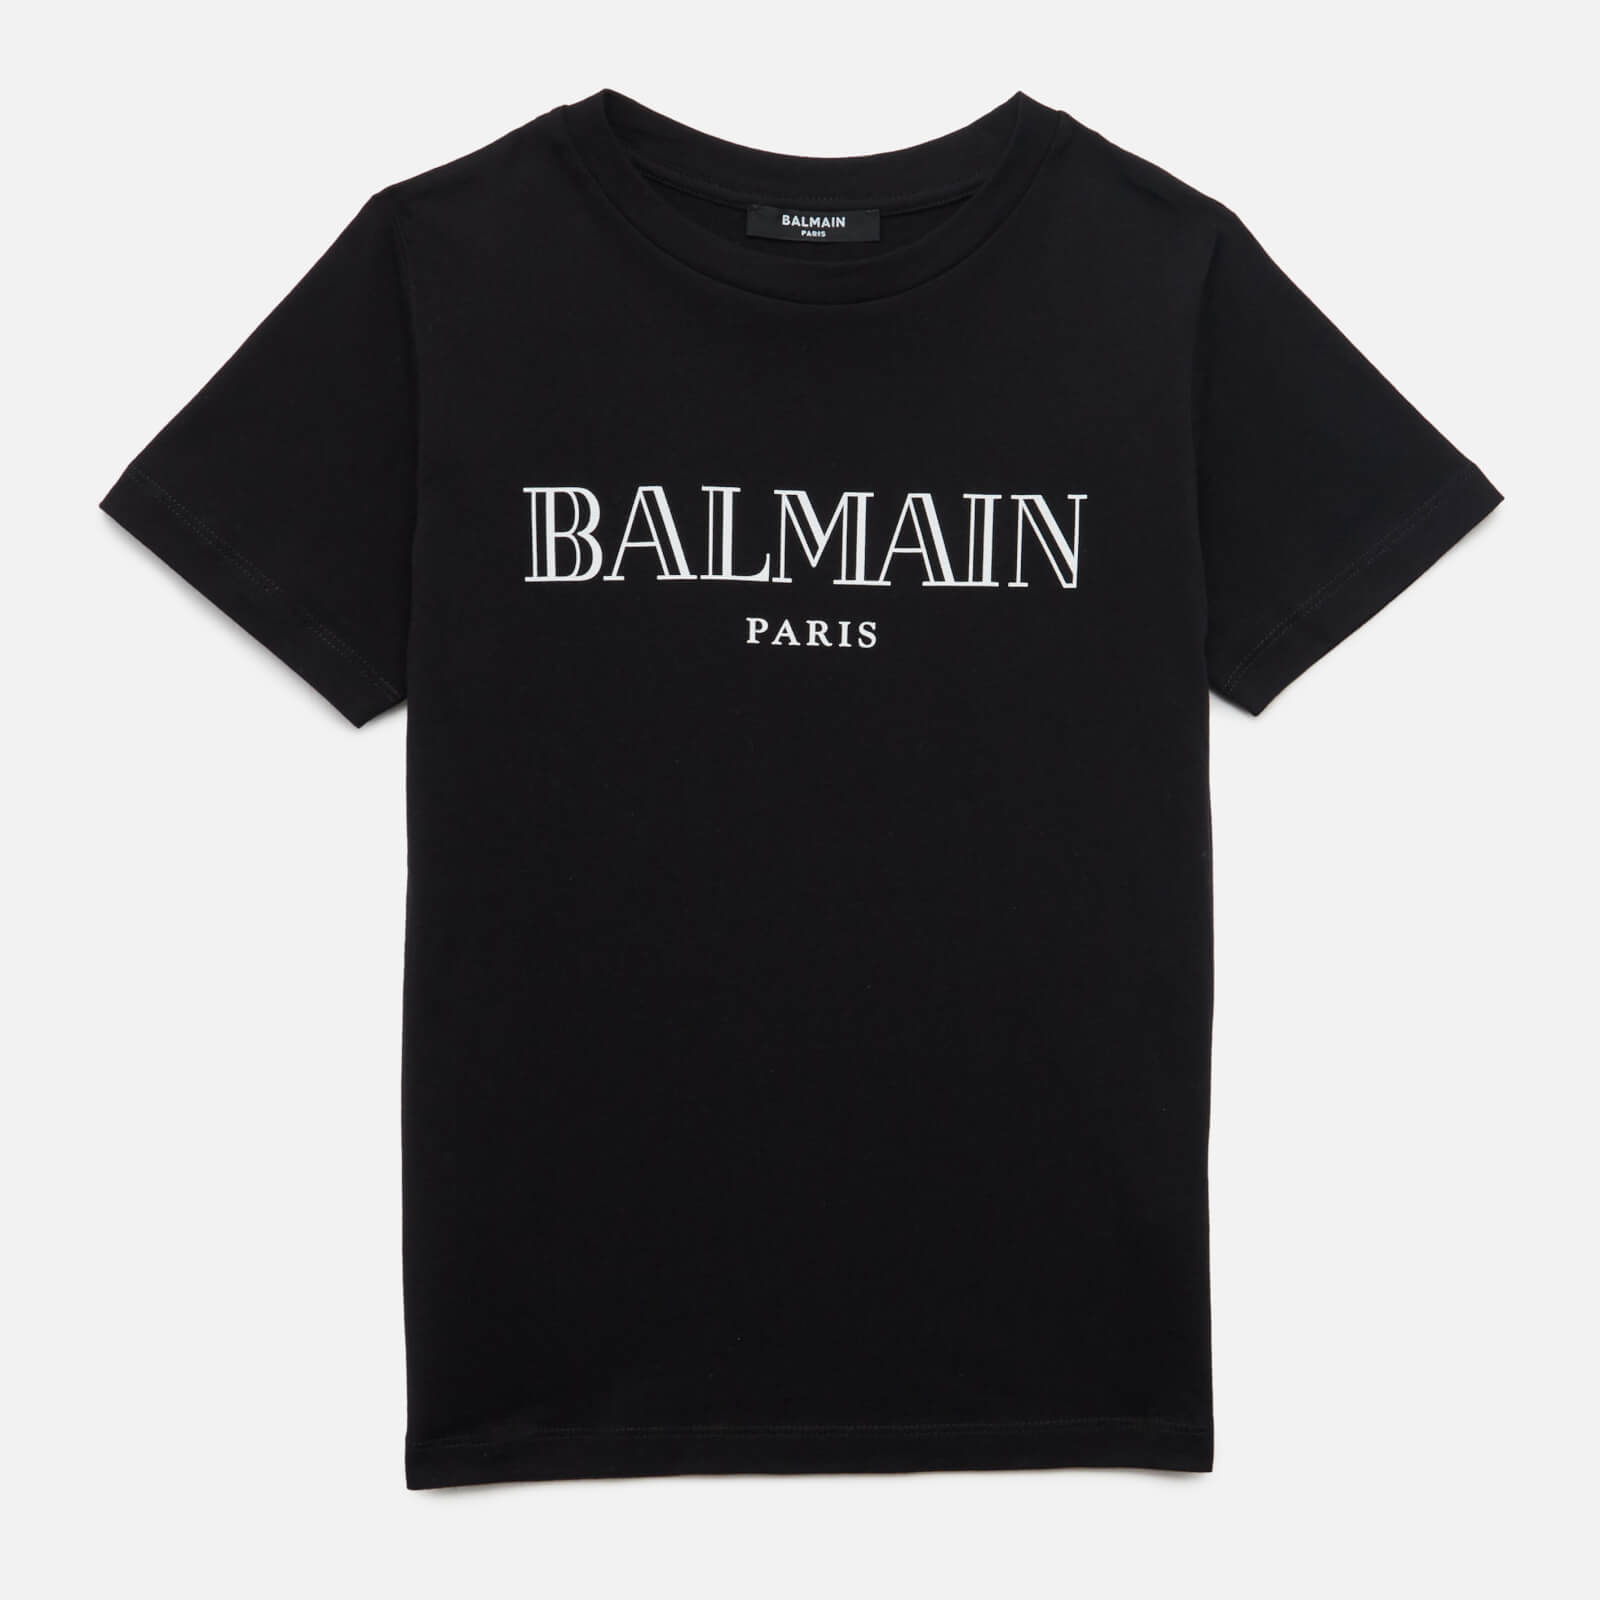 Balmain Boys' T-Shirt - Nero - 8 Years